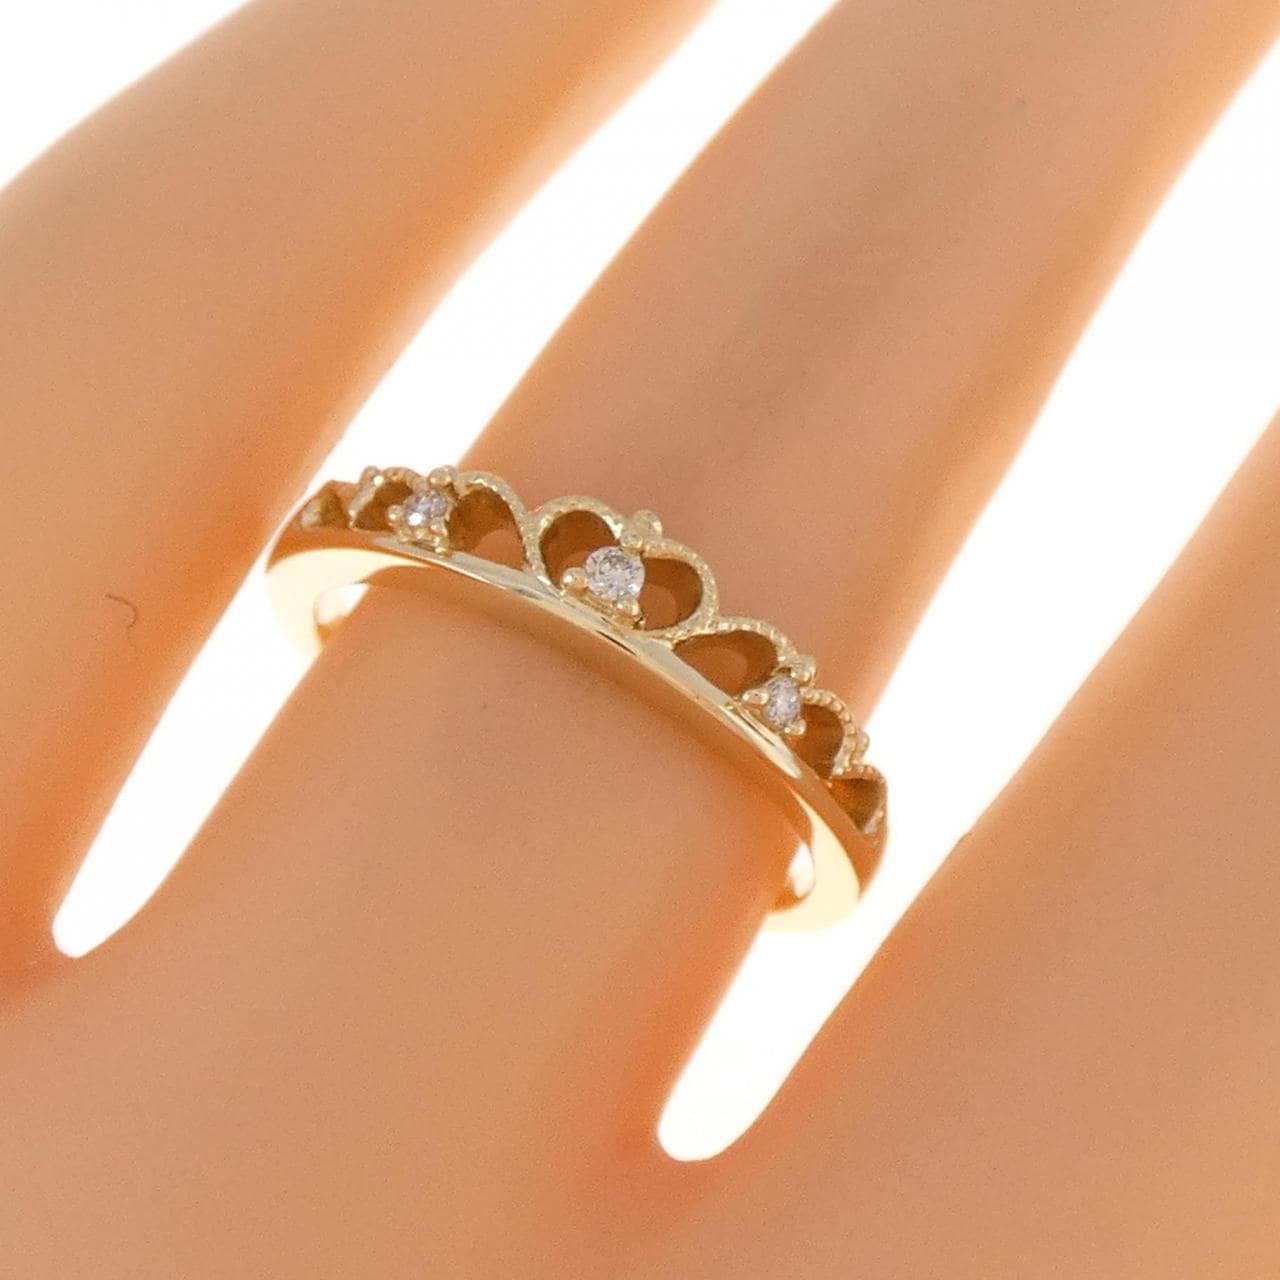 K18YG Tiara Diamond Ring 0.03CT